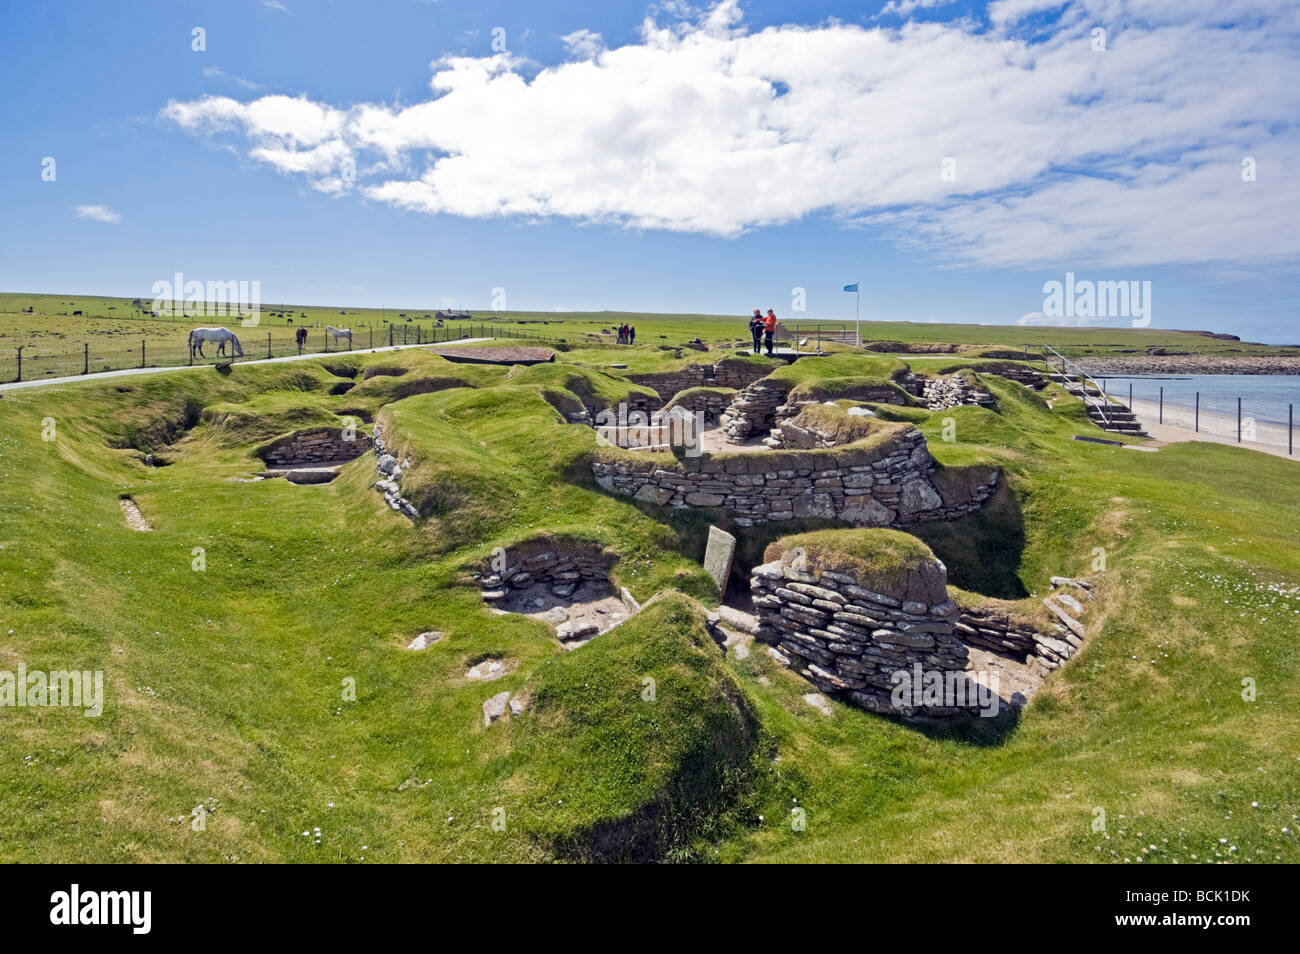 La aldea neolítica de Skara Brae en Orkney Escocia continental con diez casas de la edad de piedra que data de alrededor de 3000 años A.C. Foto de stock